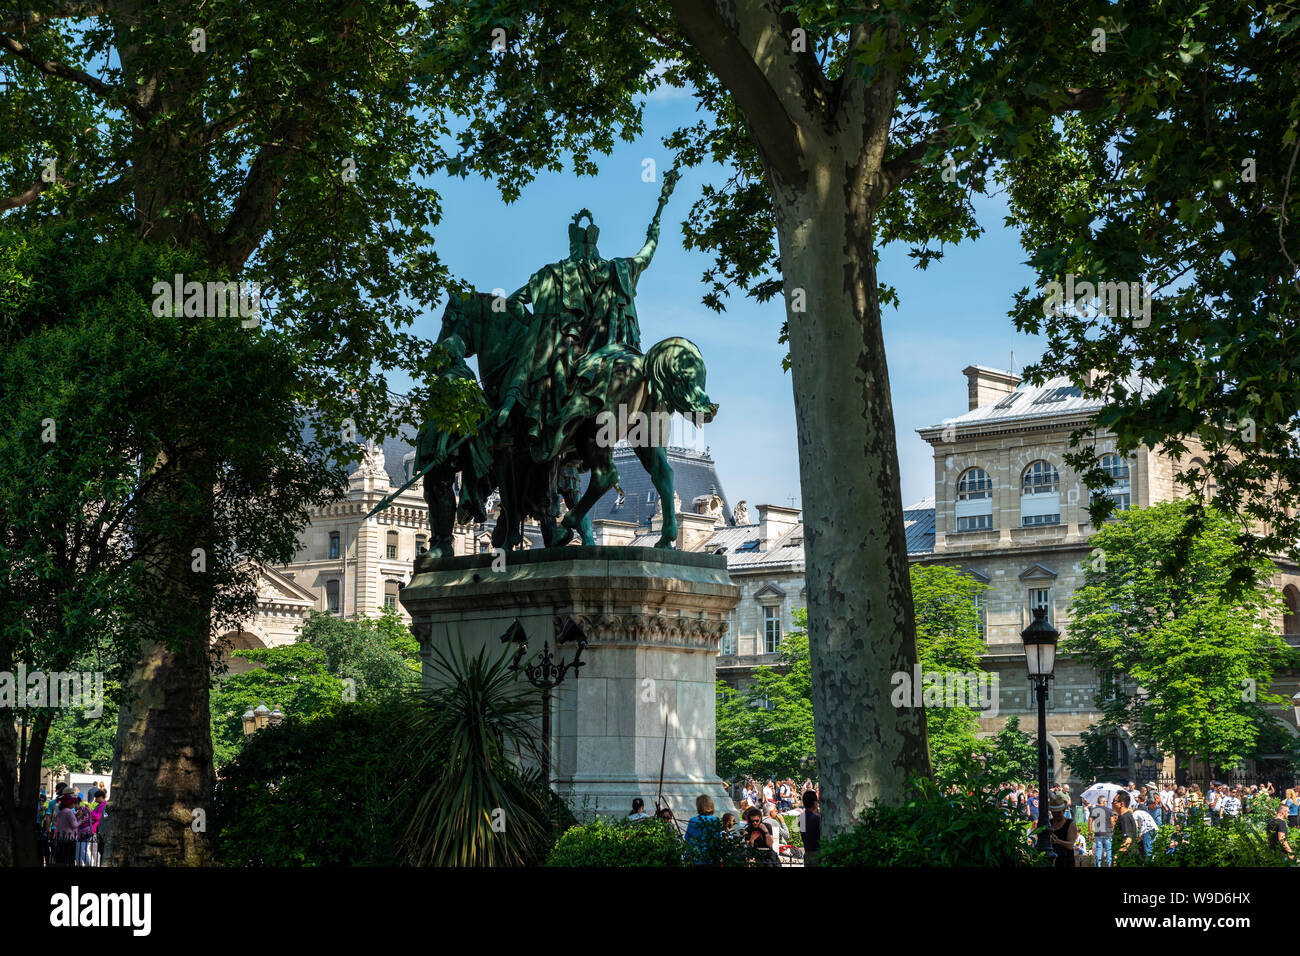 Statua equestre di Carlo Magno et ses Leudes (Carlo Magno e le sue guardie) in luogo Jean-Paul II, Ile de la Cité, Parigi, Francia Foto Stock